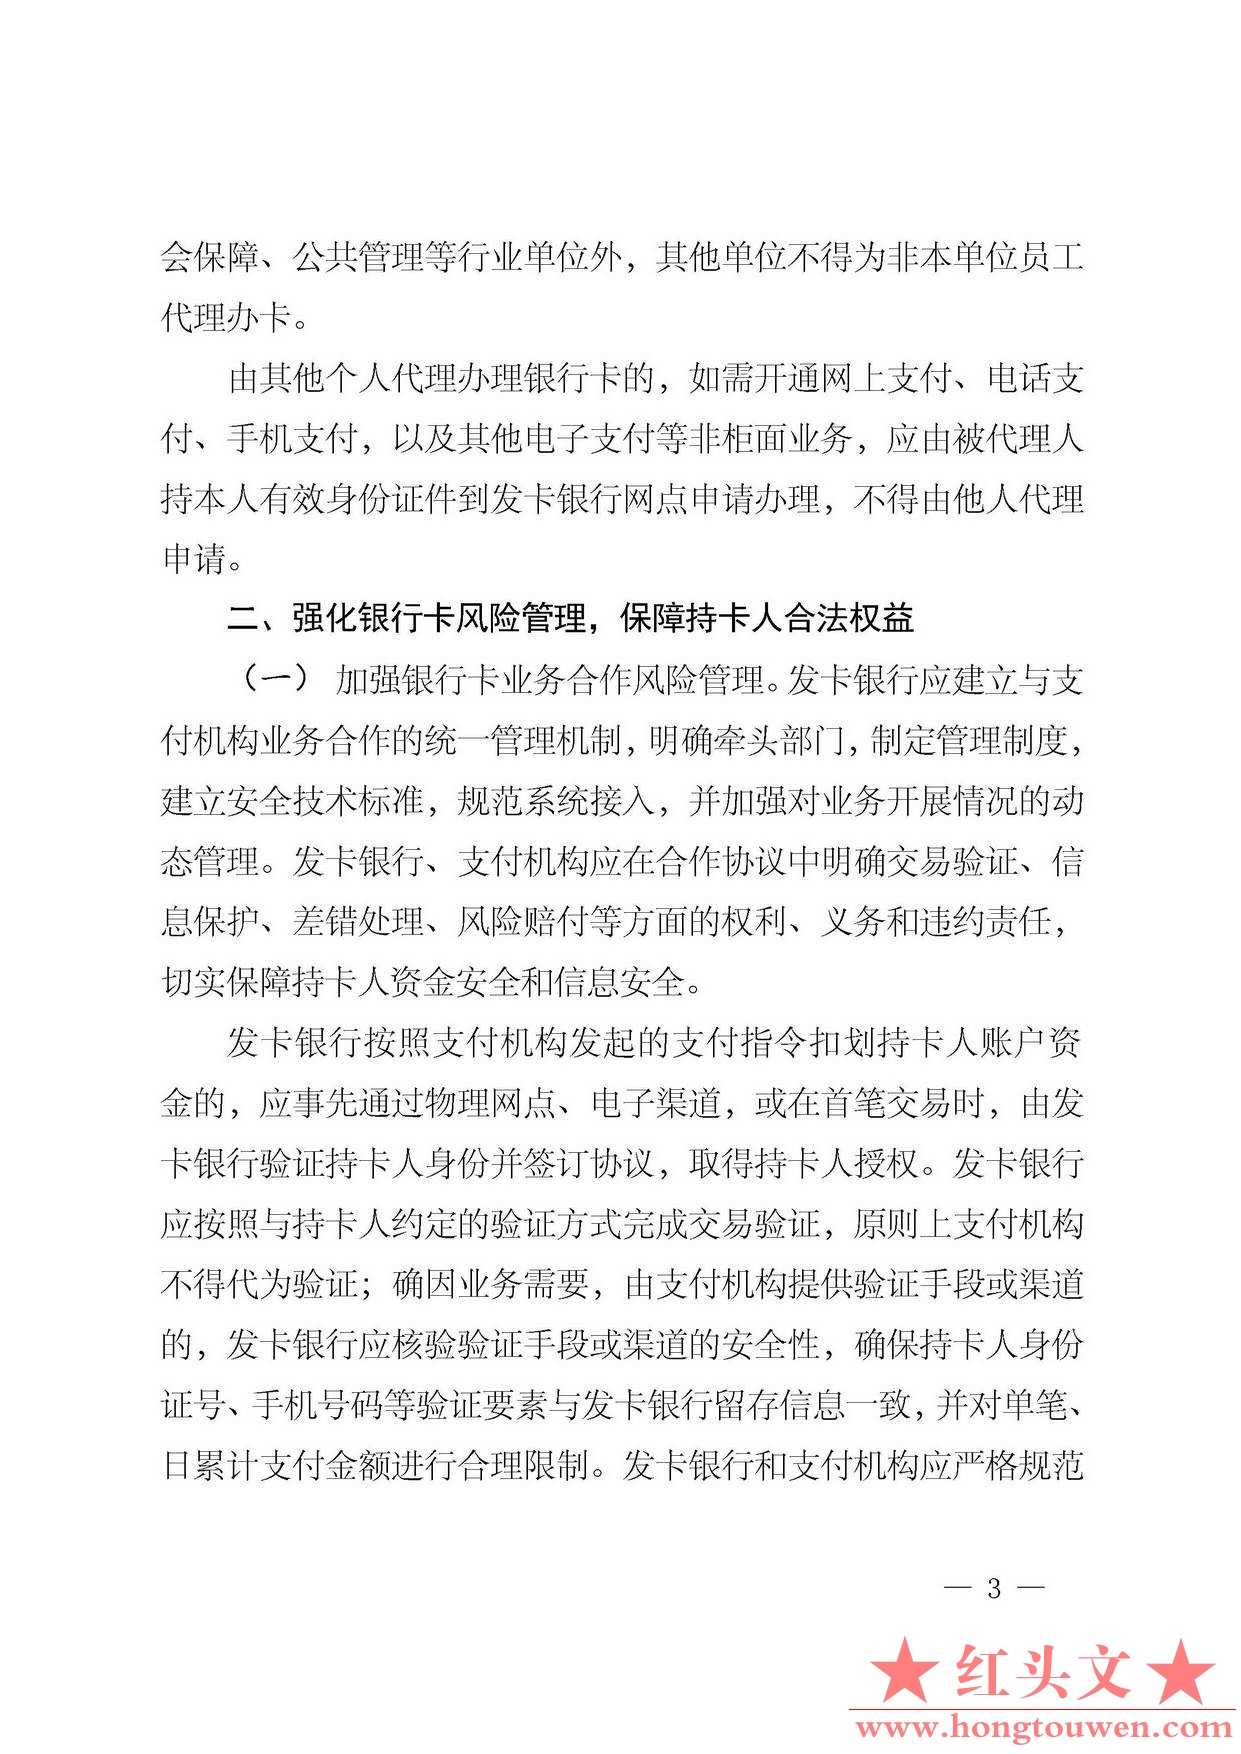 银发[2014]5号-中国人民银行关于加强银行卡业务管理的通知_页面_3.jpg